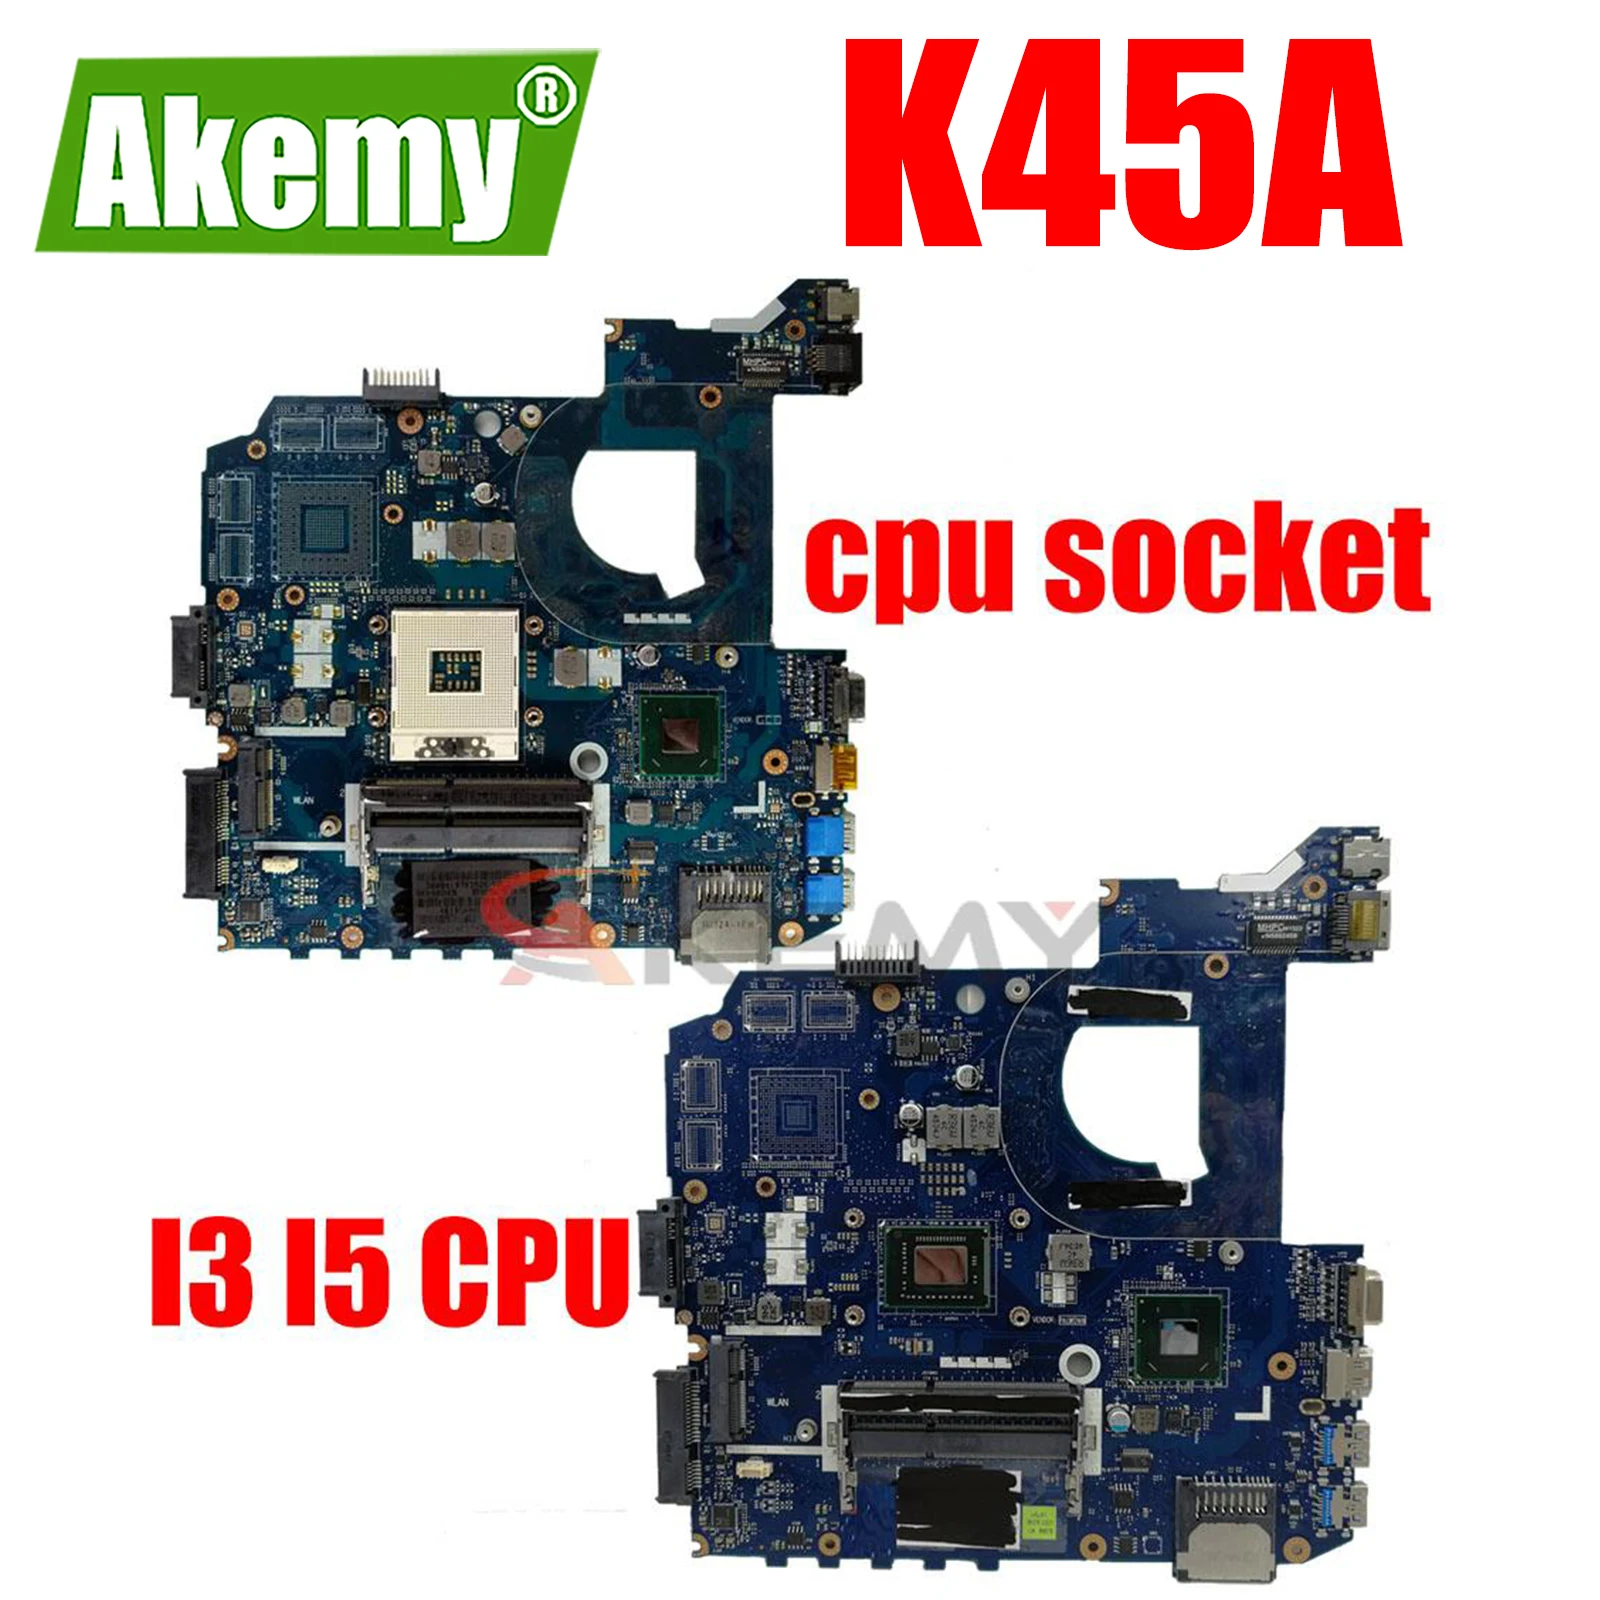 

K45A Motherboard LA-8221P Motherboard for ASUS K45VD A45V K45VM K45VS A85V Laptop Motherboard Mainboard on Board I3 I5 CPU